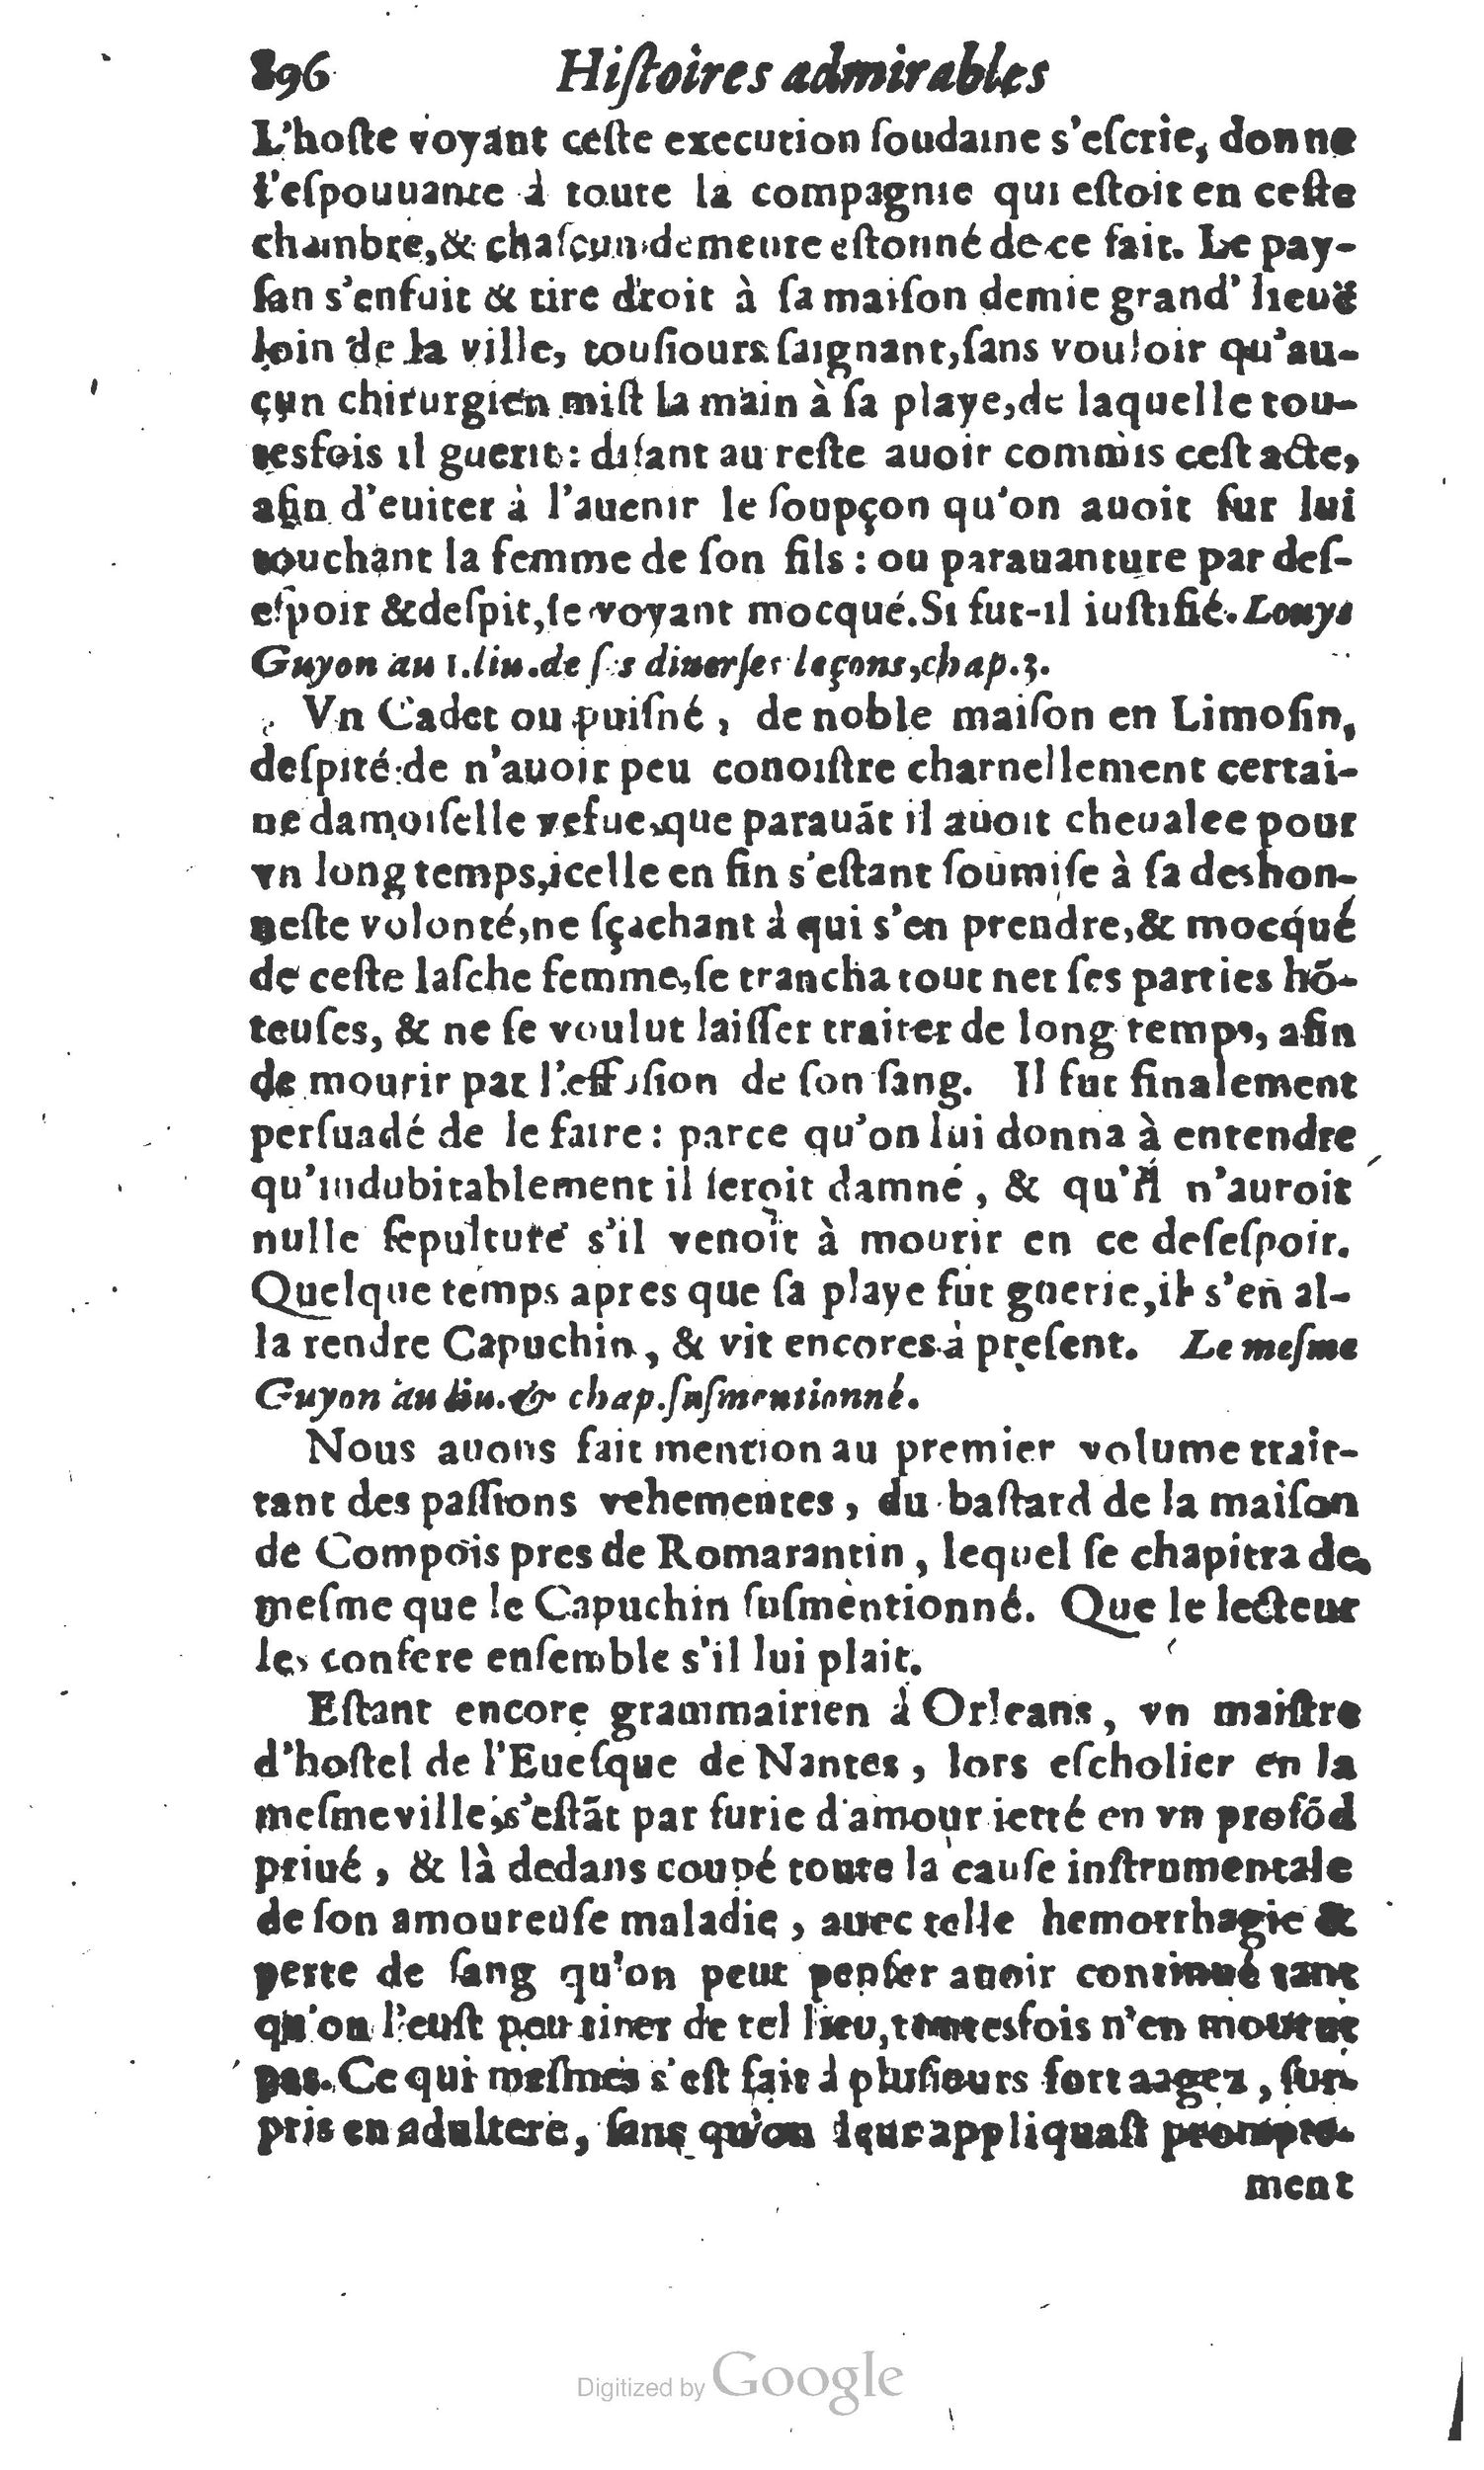 1610 Trésor d’histoires admirables et mémorables de nostre temps Marceau Princeton_Page_0917.jpg